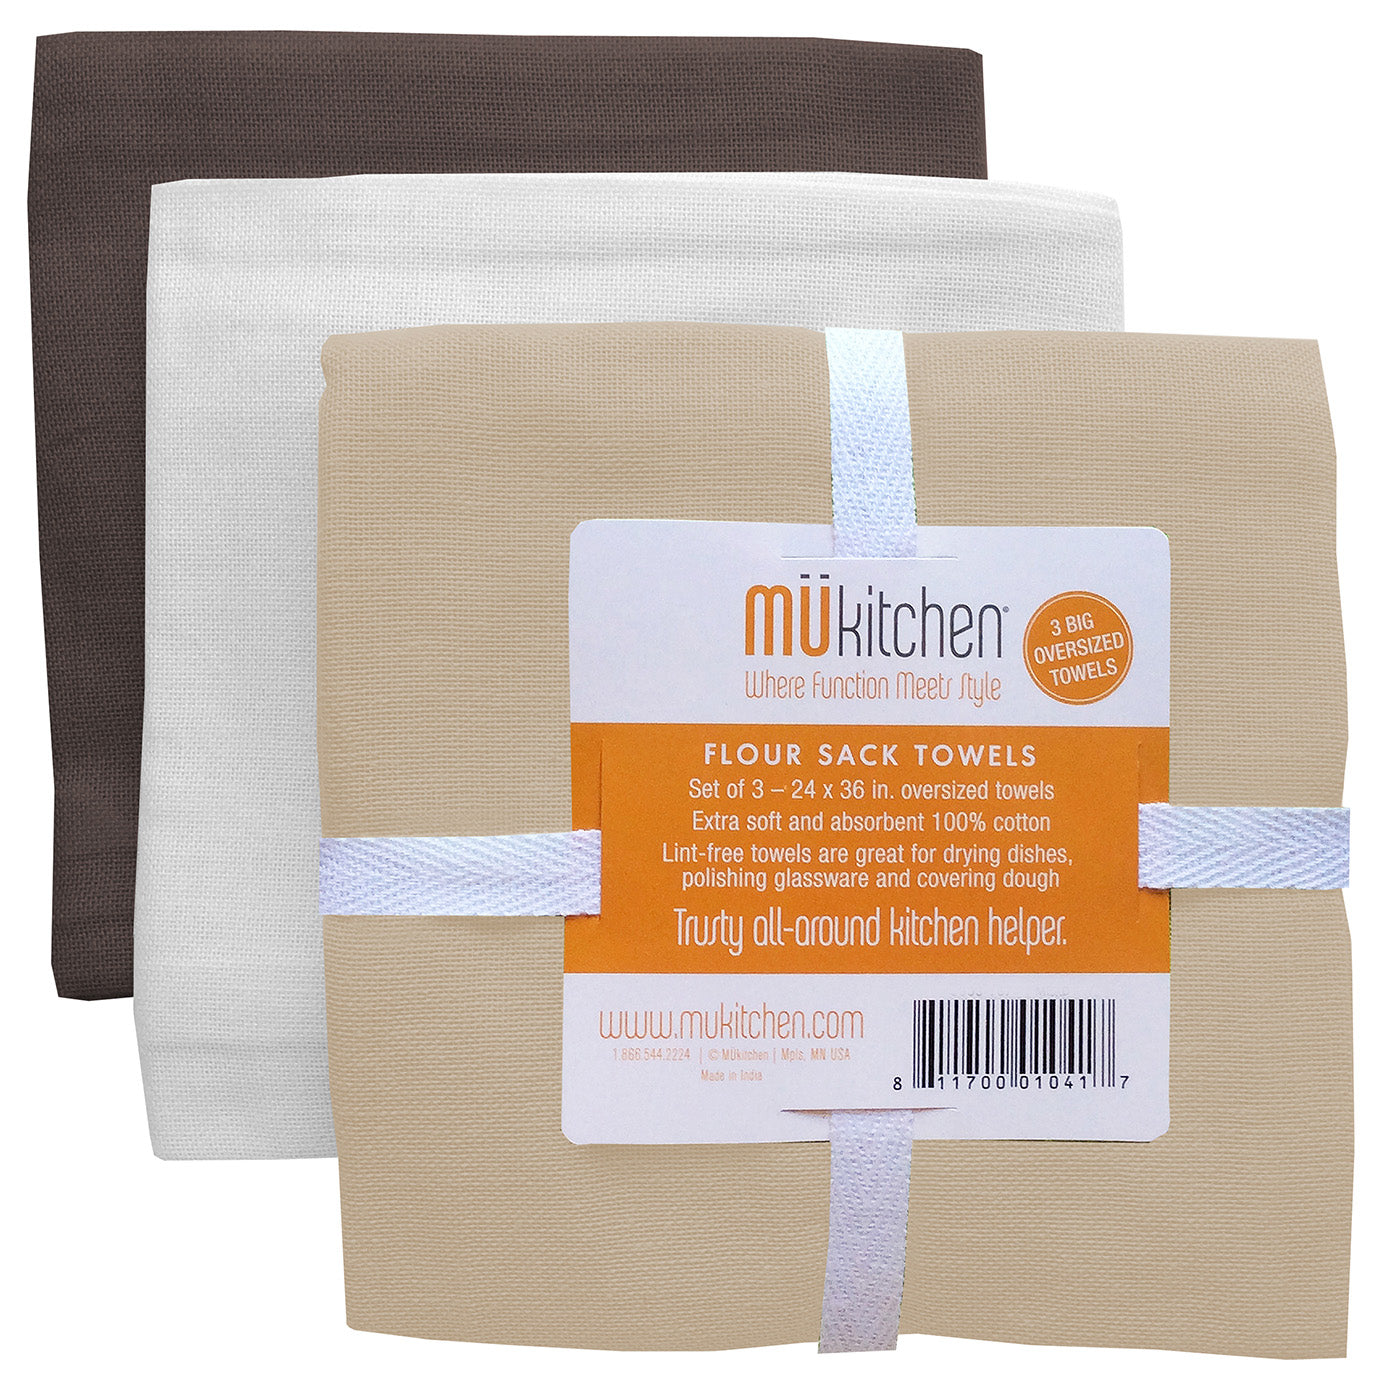 Mukitchen Flour Sack Towels, Cafe - 3 towels